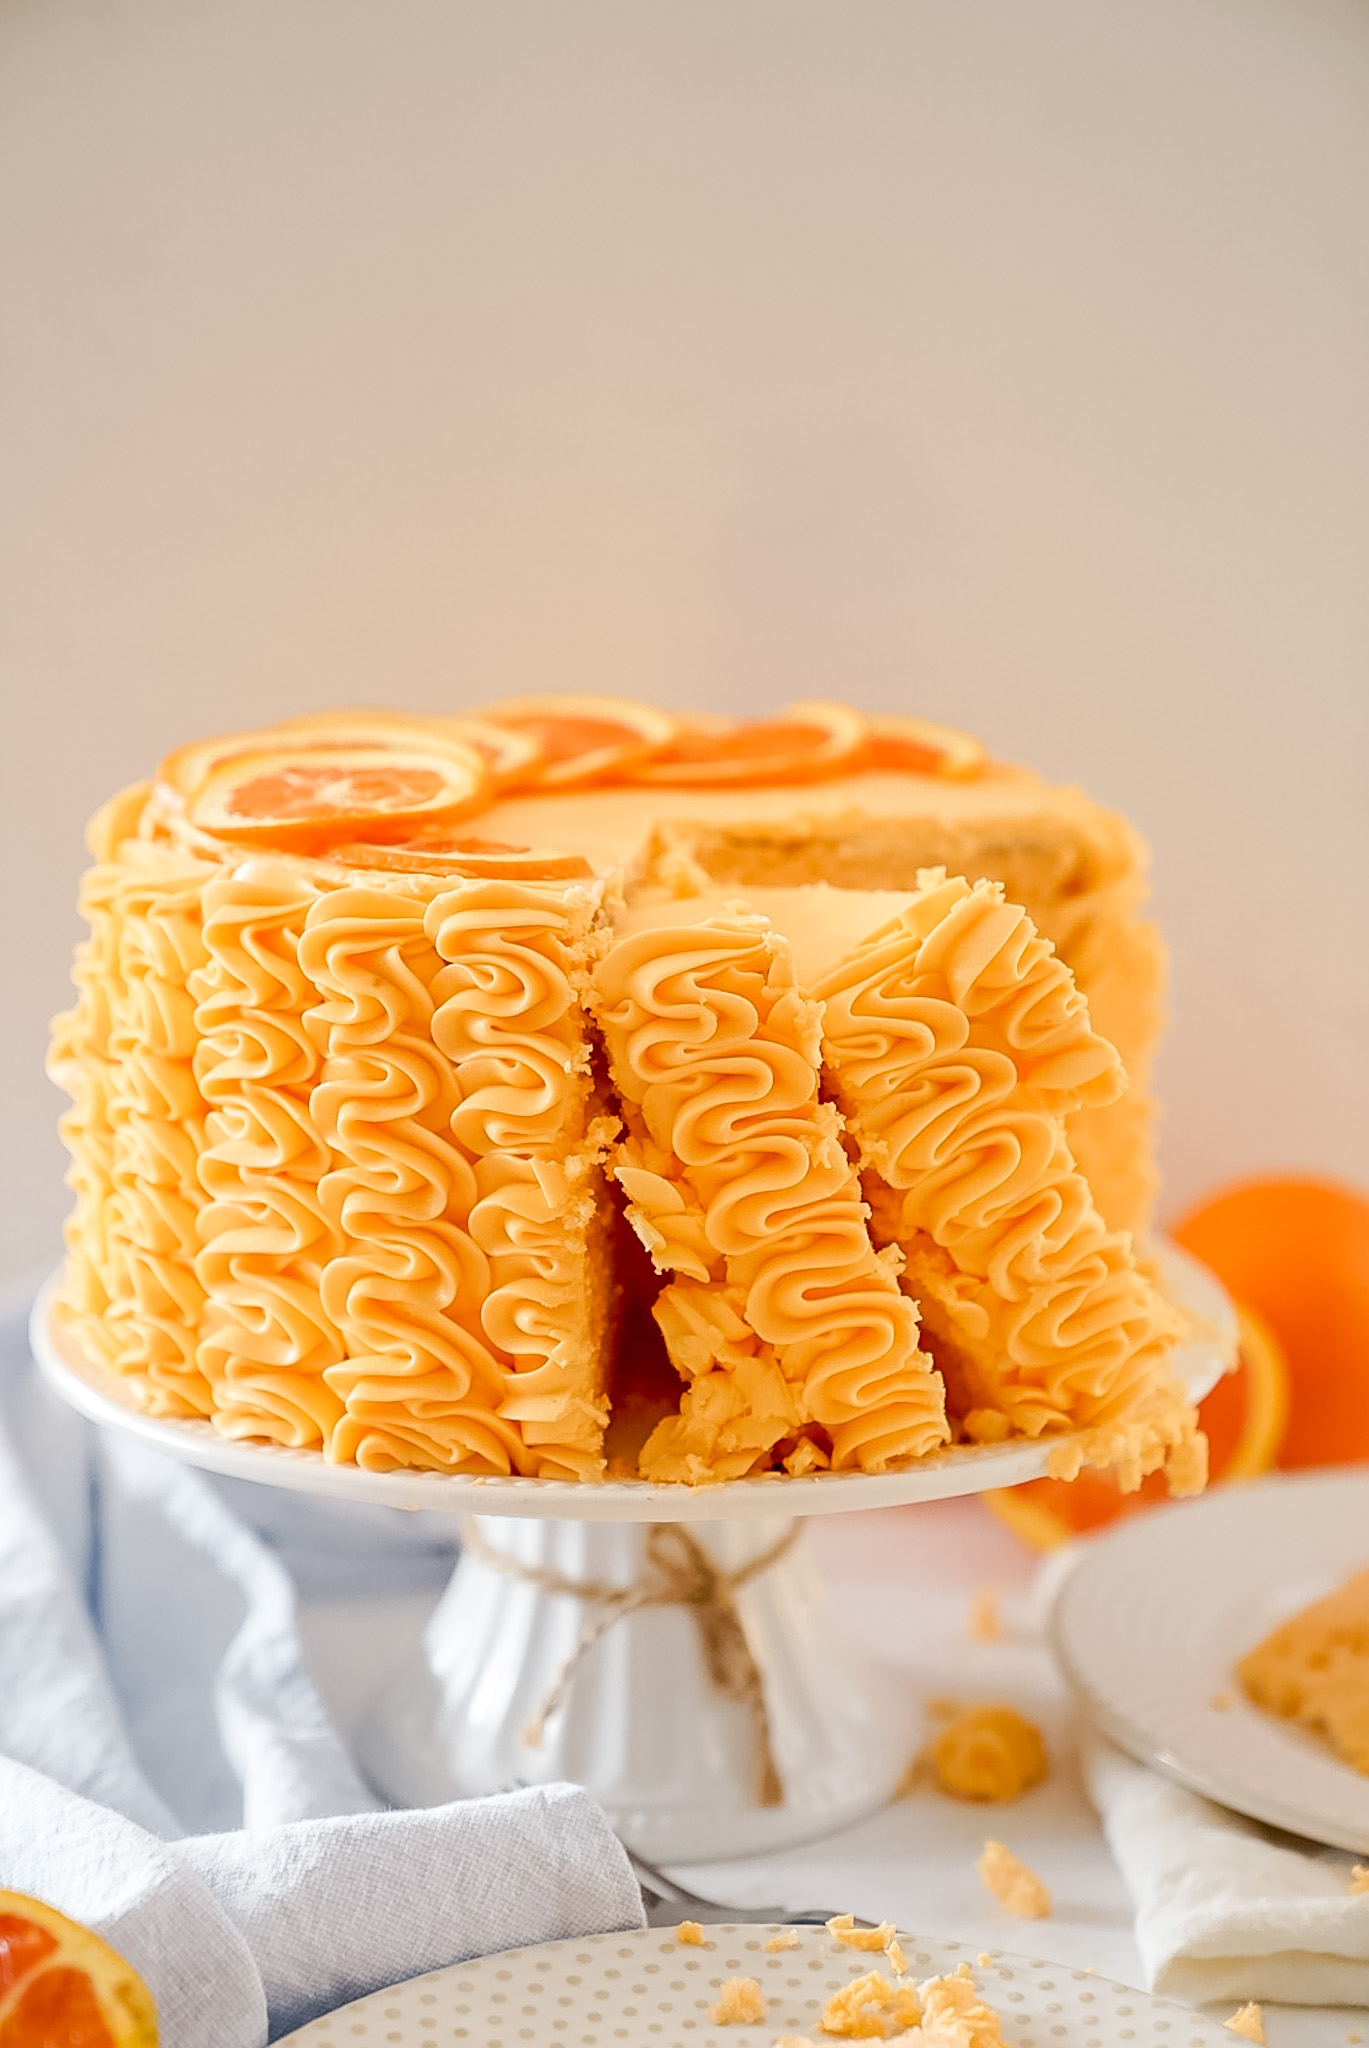 Orange Cream Cake – Deliciously Sprinkled